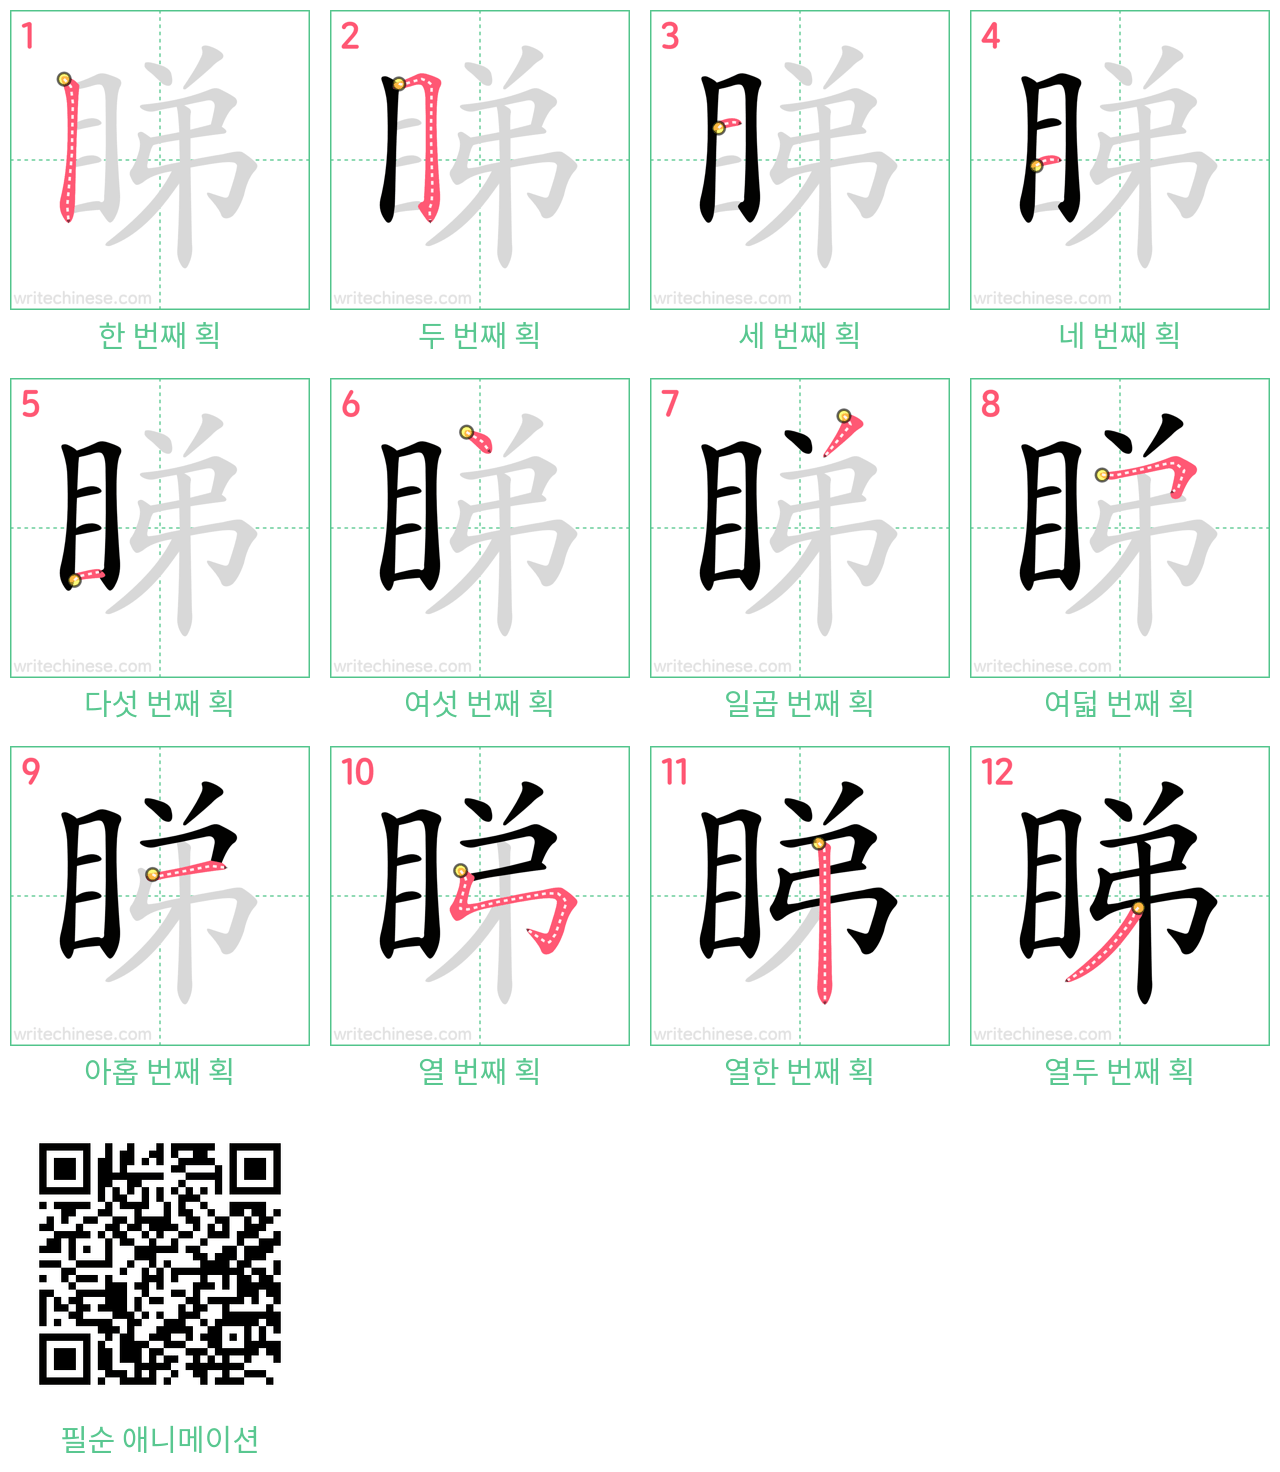 睇 step-by-step stroke order diagrams